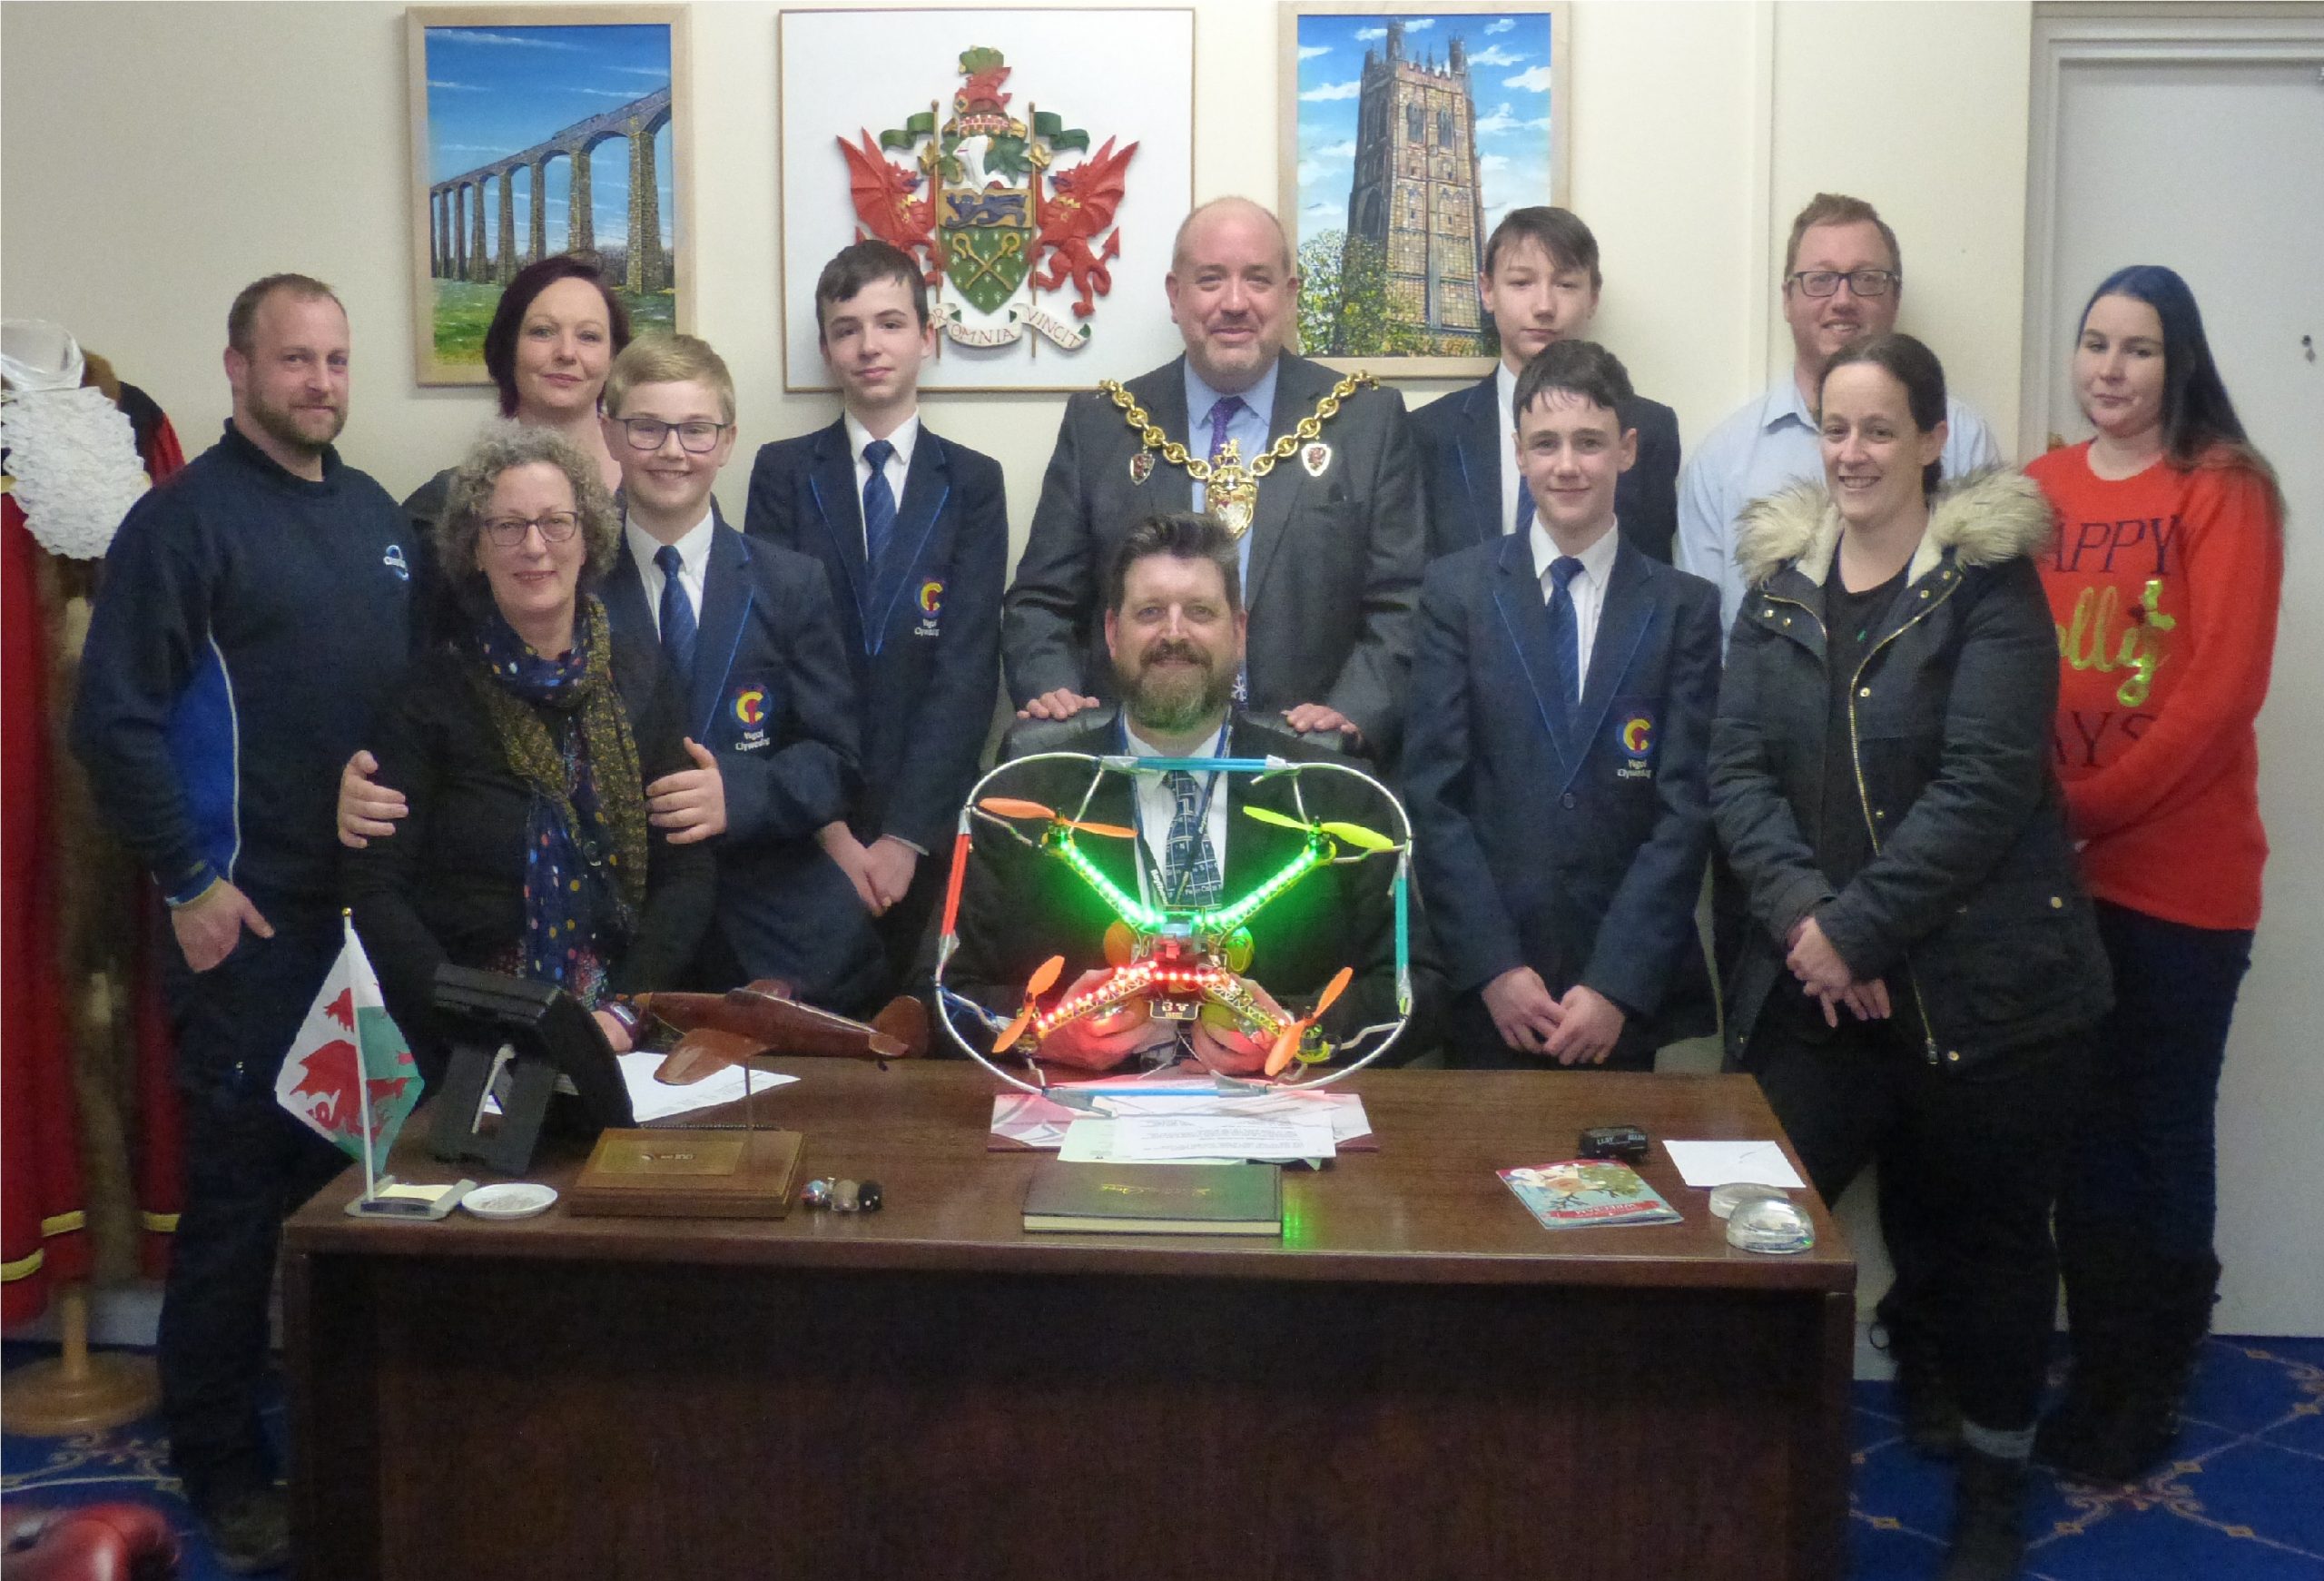 Ysgol Clywedog's drone team congratulated by the Mayor